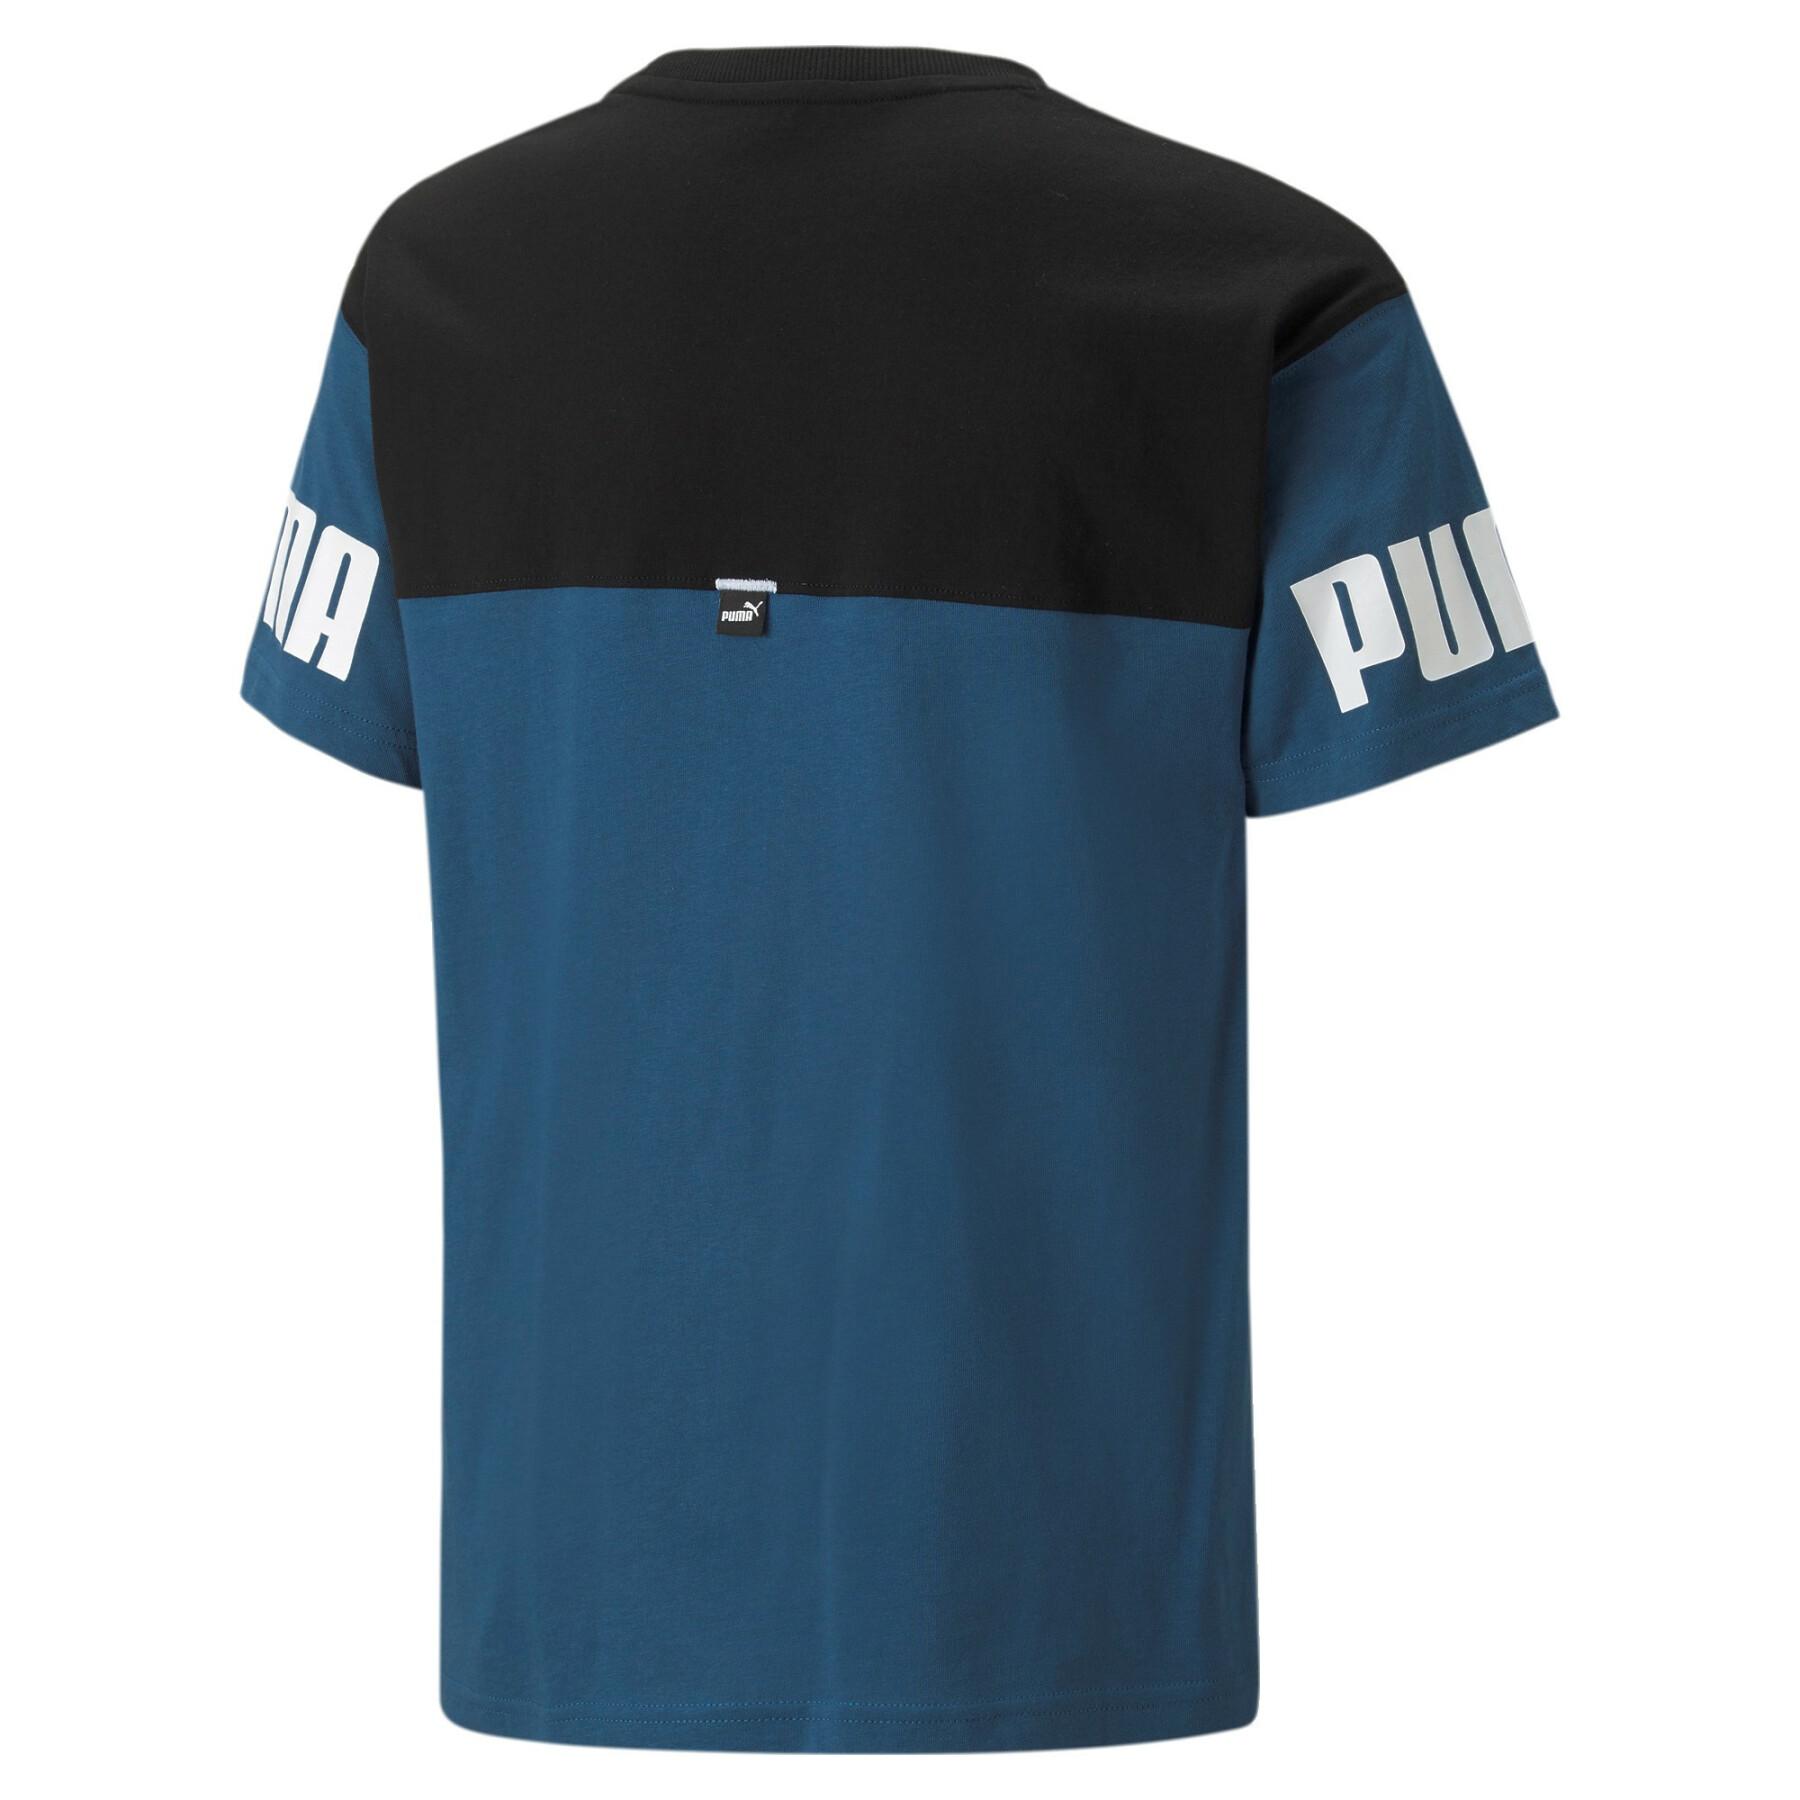 Camiseta para niños Puma Power Colorblock